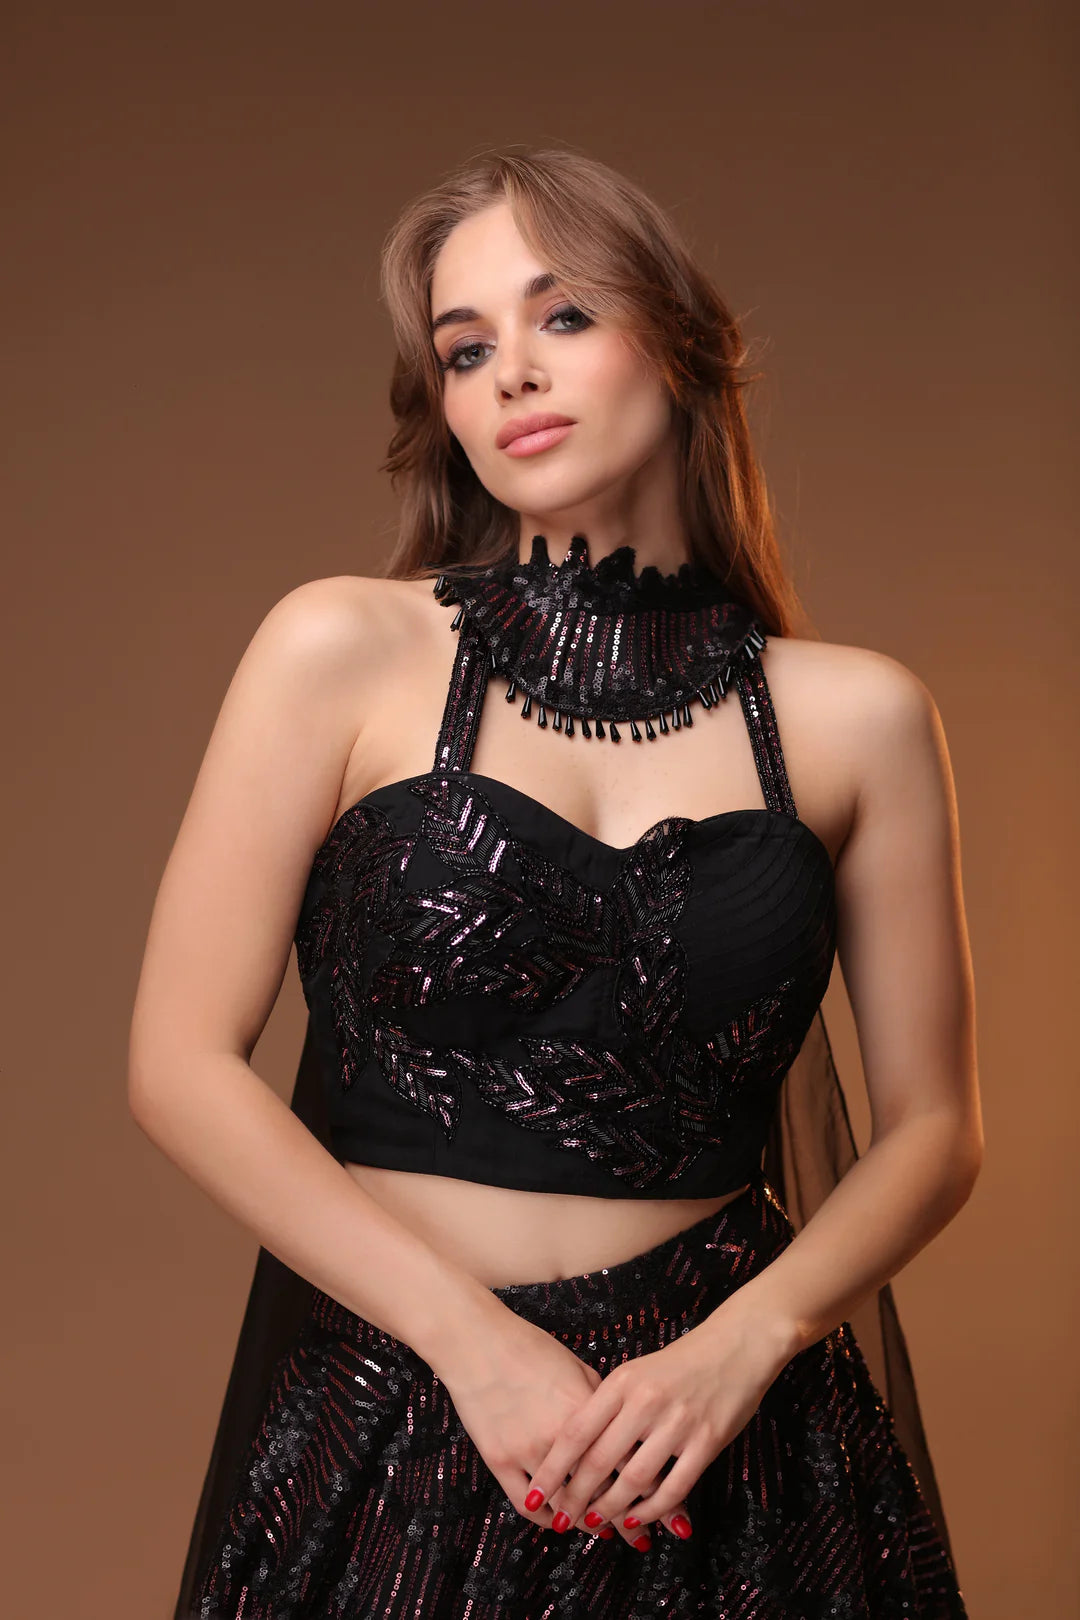 Model is wearing a lehenga in a deep, dark black color.